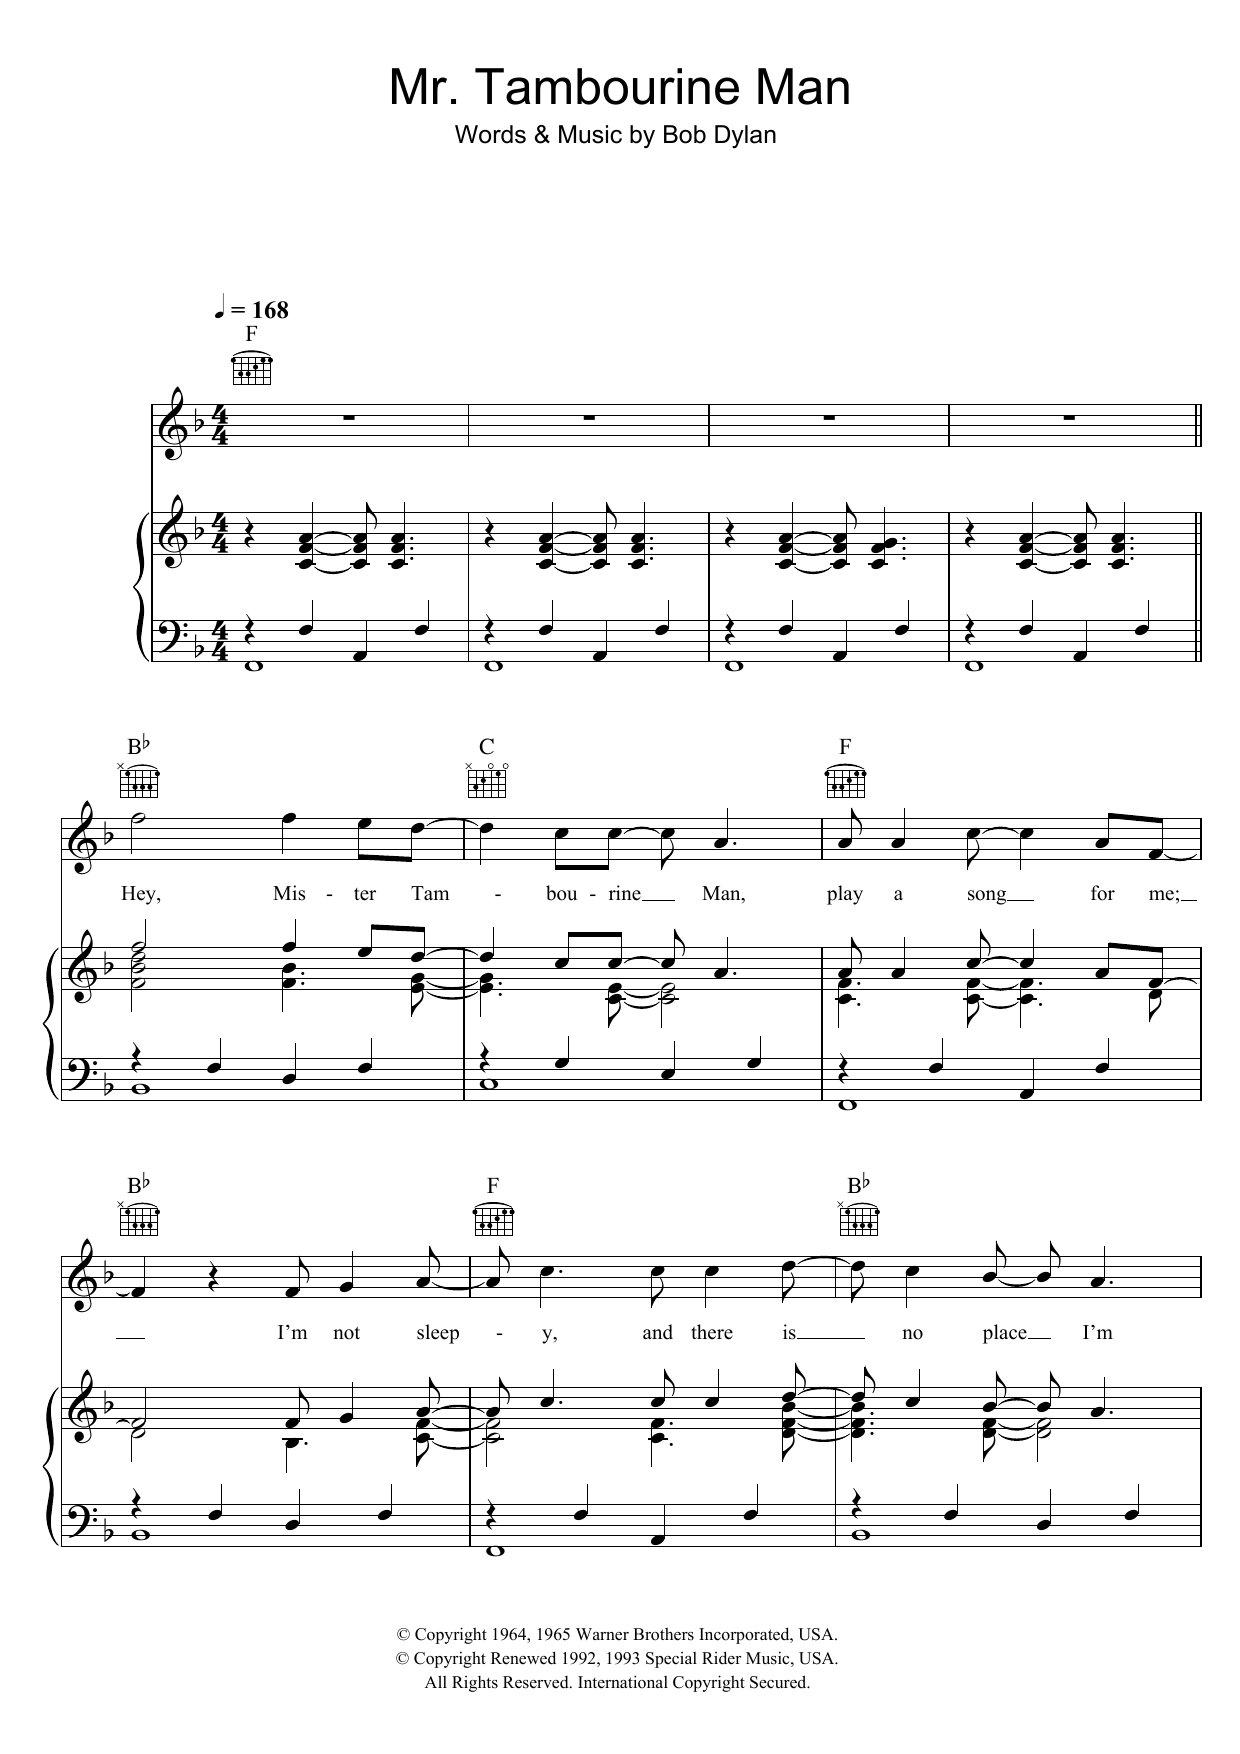 Bob Dylan Mr. Tambourine Man Sheet Music Notes & Chords for Banjo - Download or Print PDF